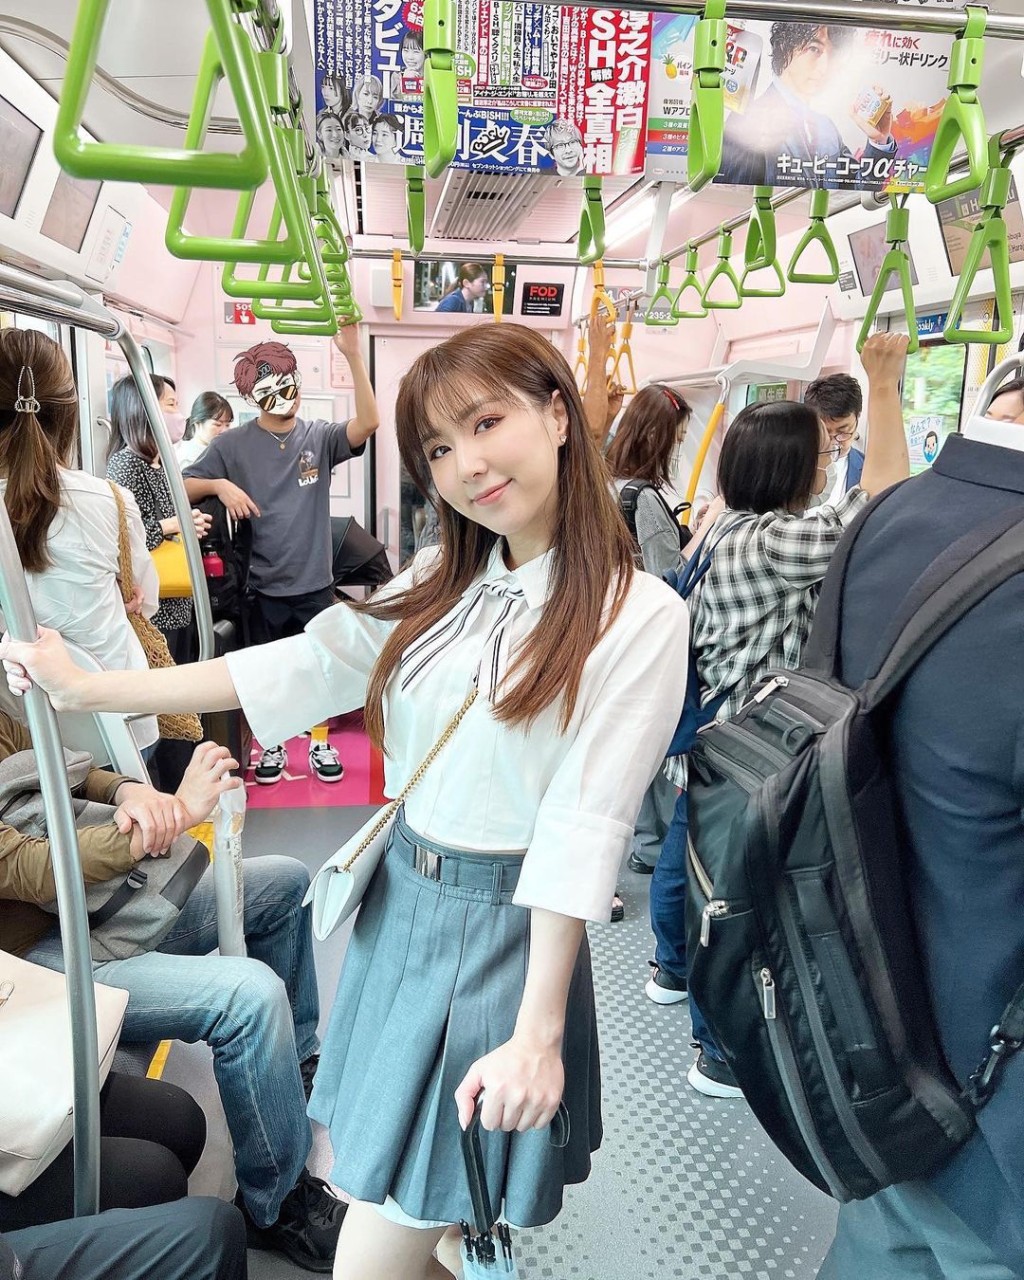 譚嘉儀上月在日本JR車廂打卡，因沒有替其他乘客「打隔仔」，被網民轟觸犯當地禁忌超失禮。